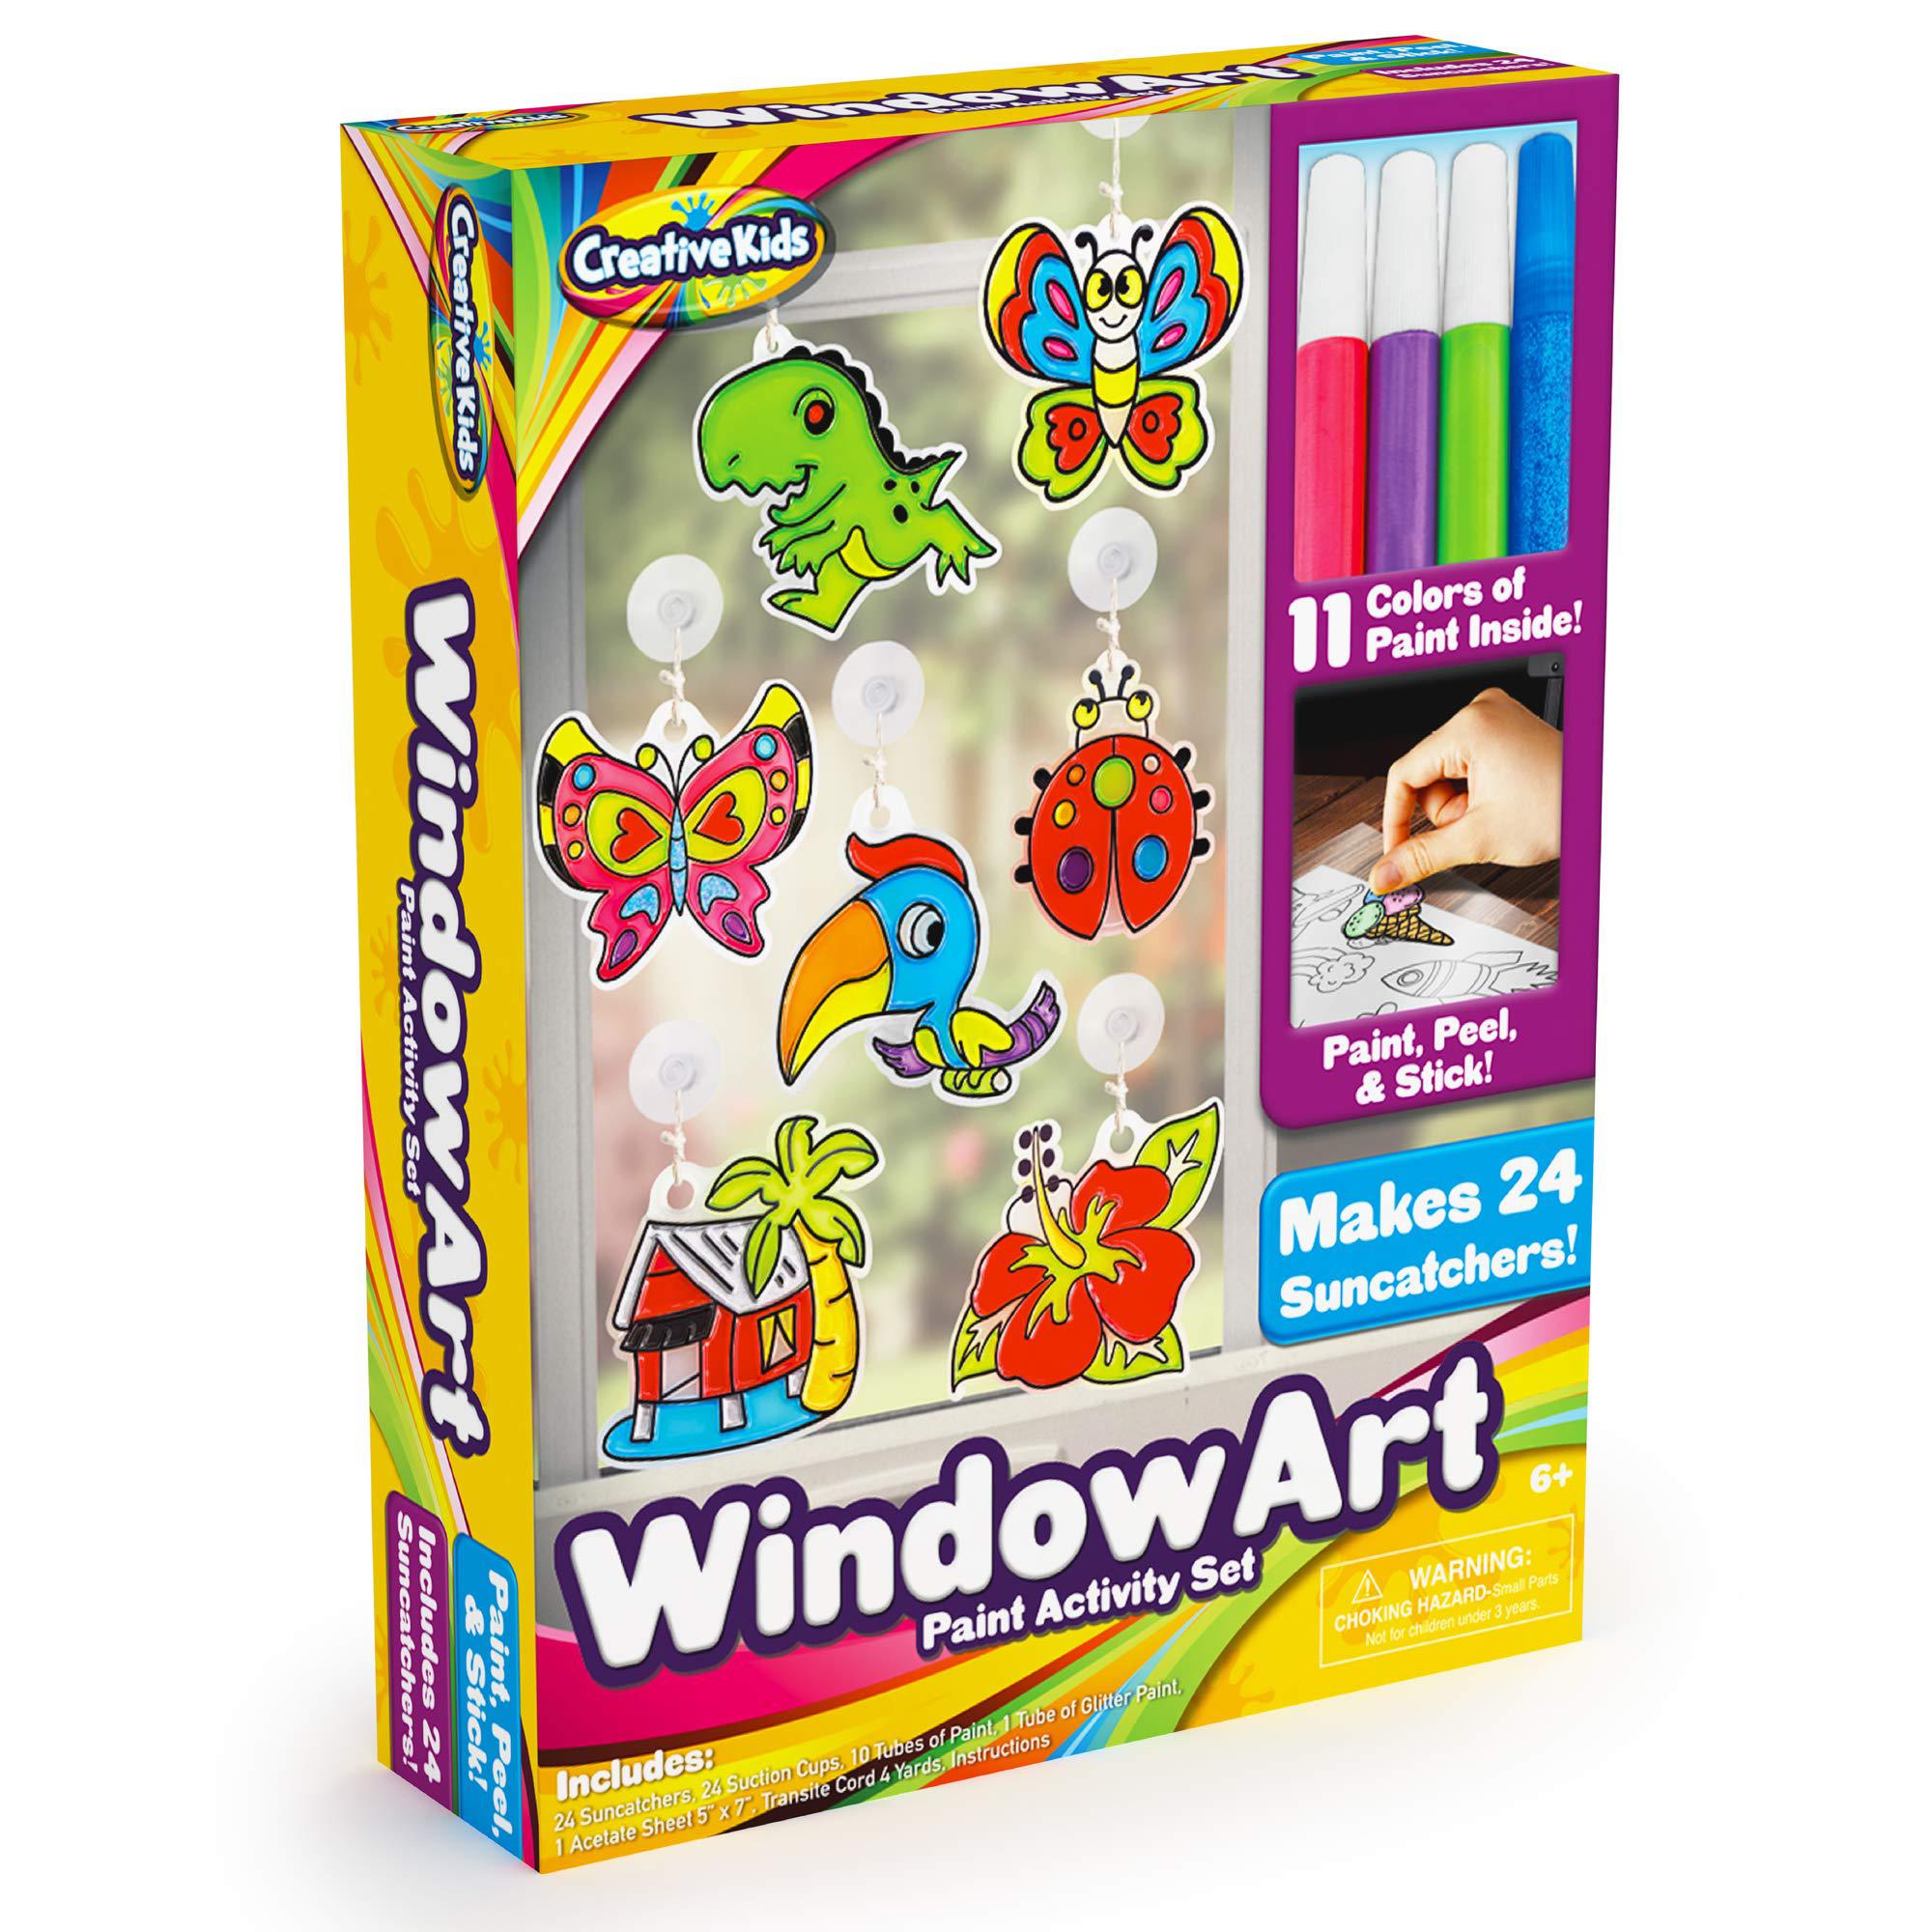 CREATIVE KIDS creative kids window paint art kit - make your own suncatchers  set - 24 sun catchers, 24 suction cups & 11 paints - suncatche